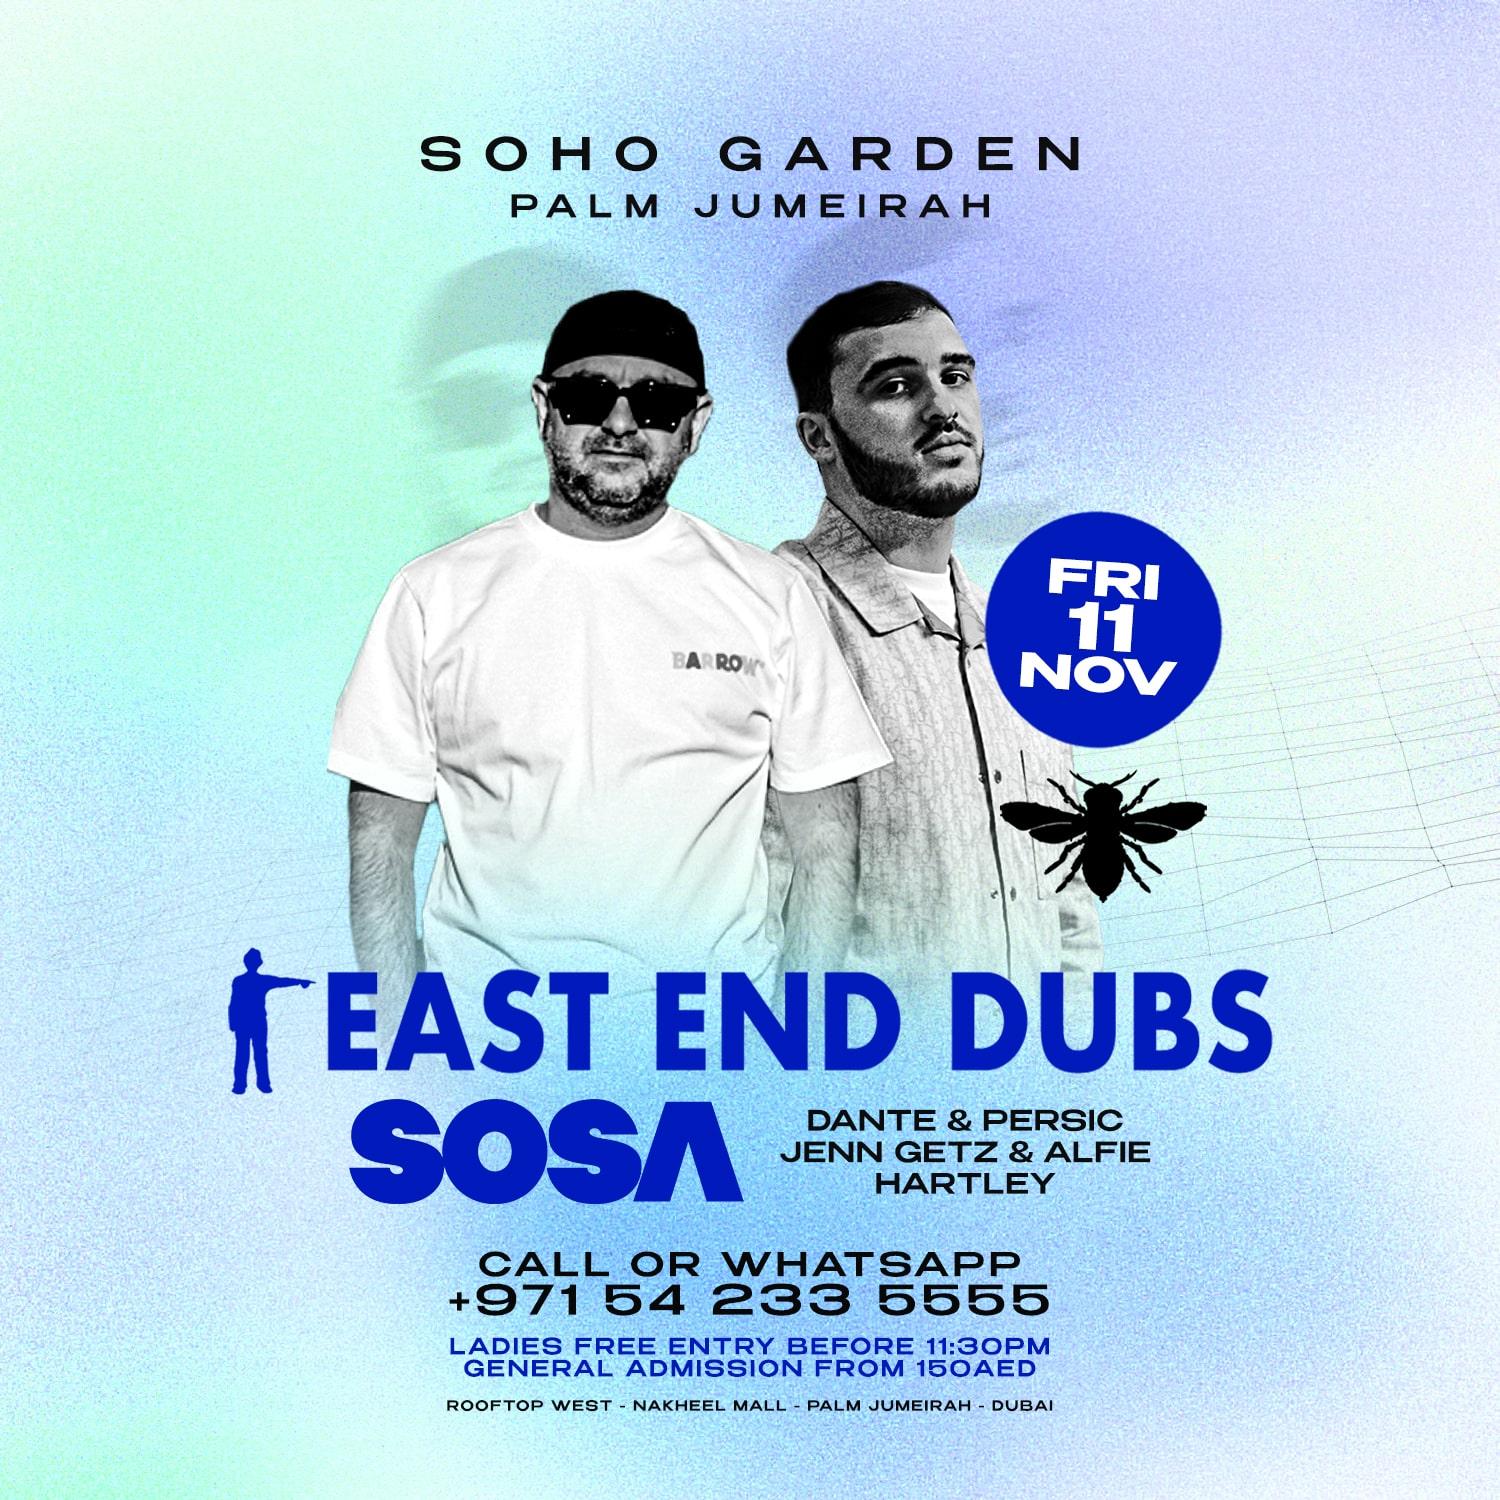  East End Subs at Sosa Soho Garden Palm Jumeirah